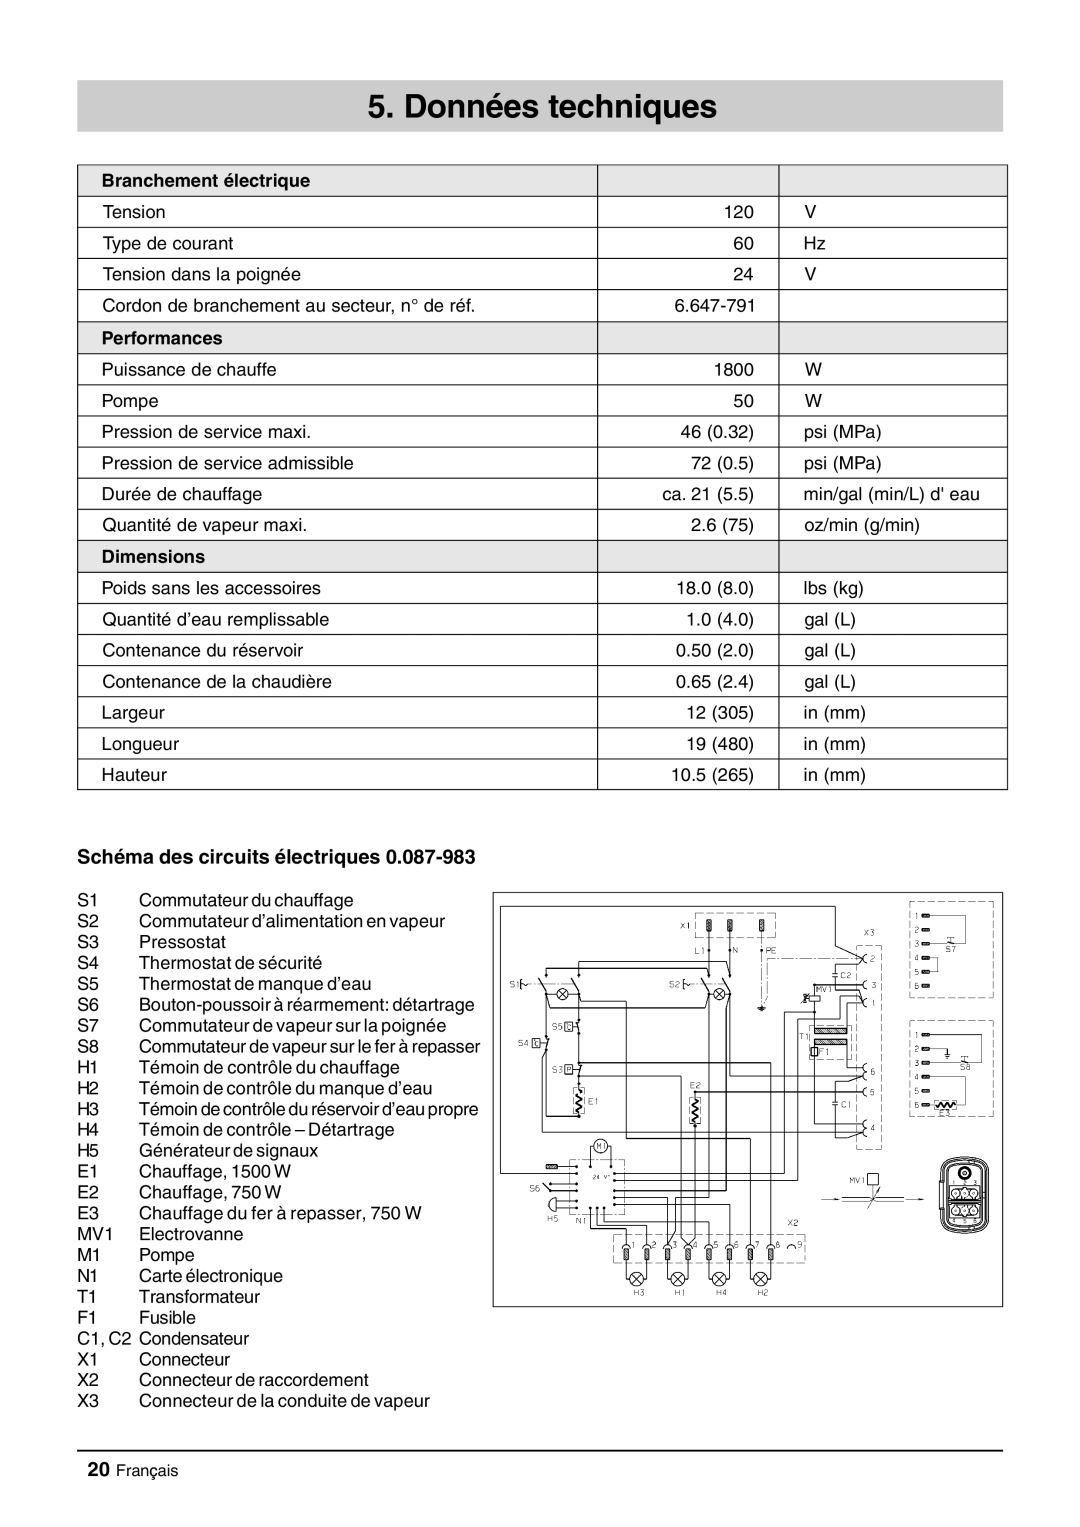 Windsor Zephyr manual Données techniques, Schéma des circuits électriques, Branchement électrique, Performances, Dimensions 